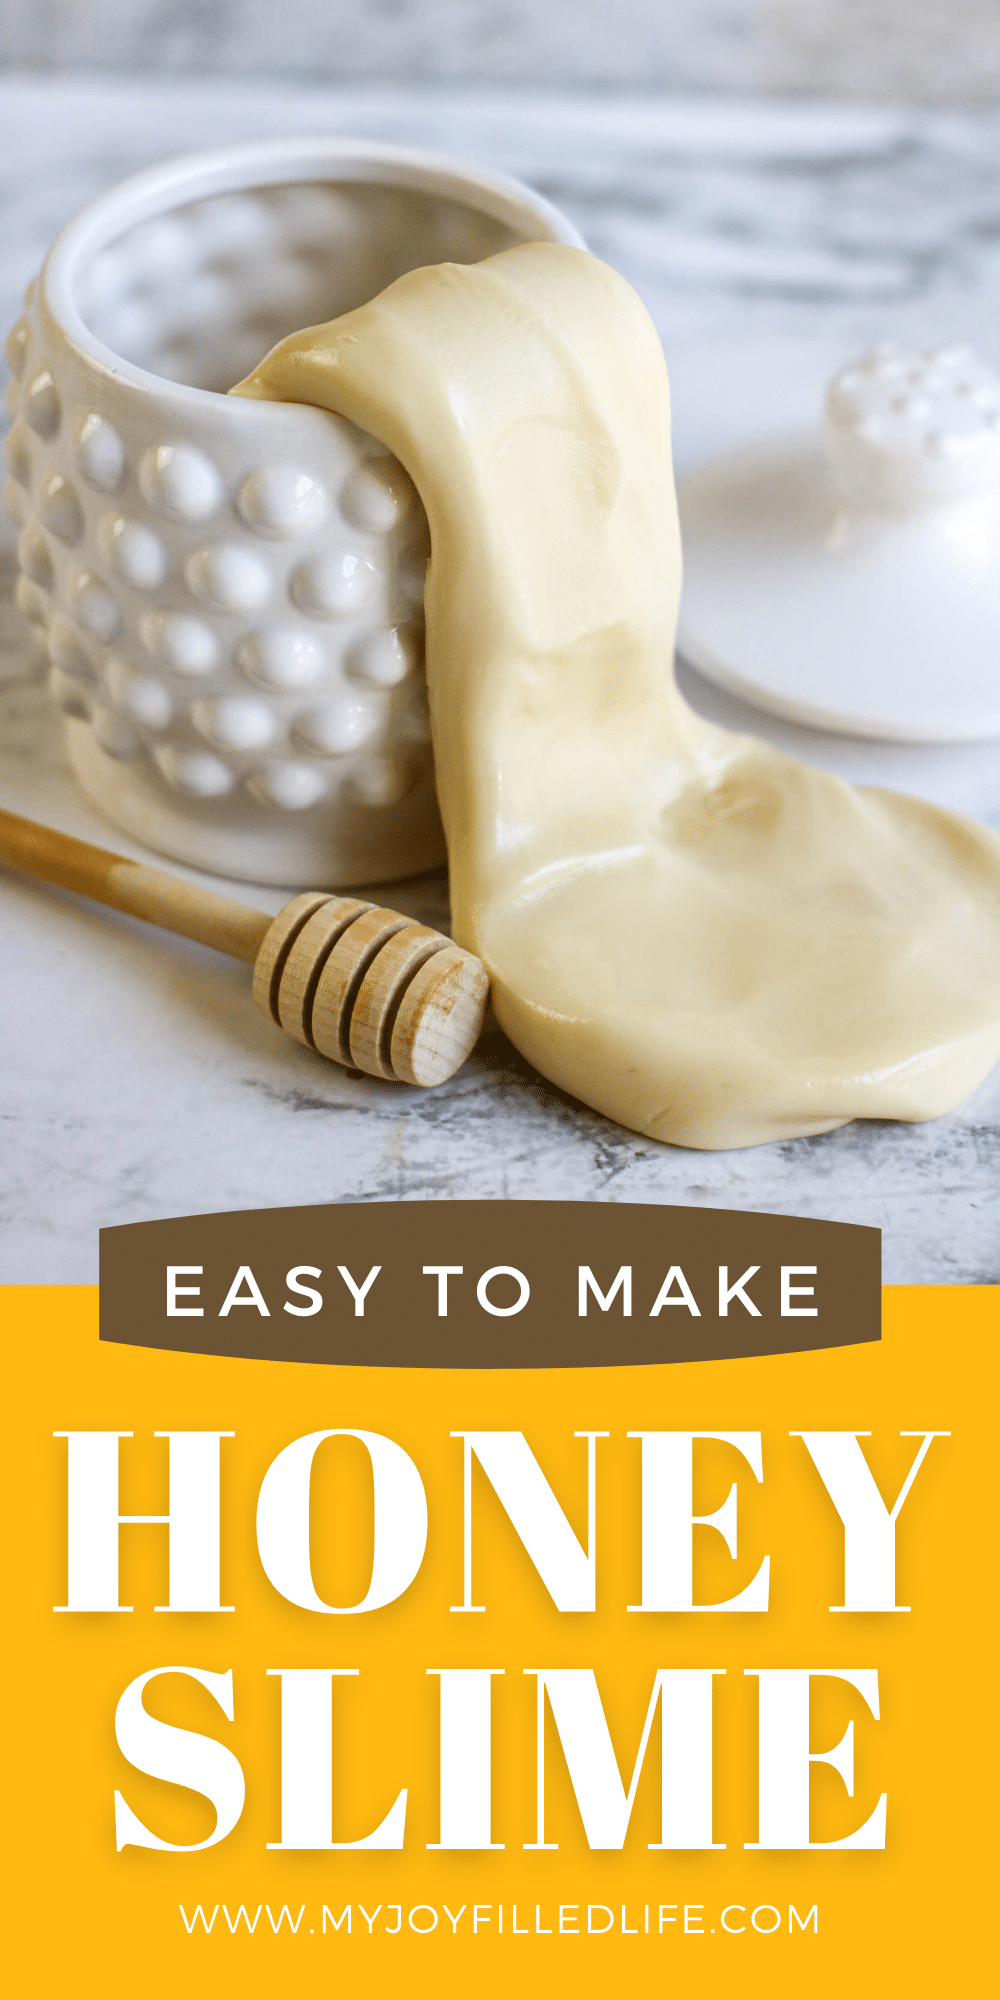 Easy to Make Honey Slime